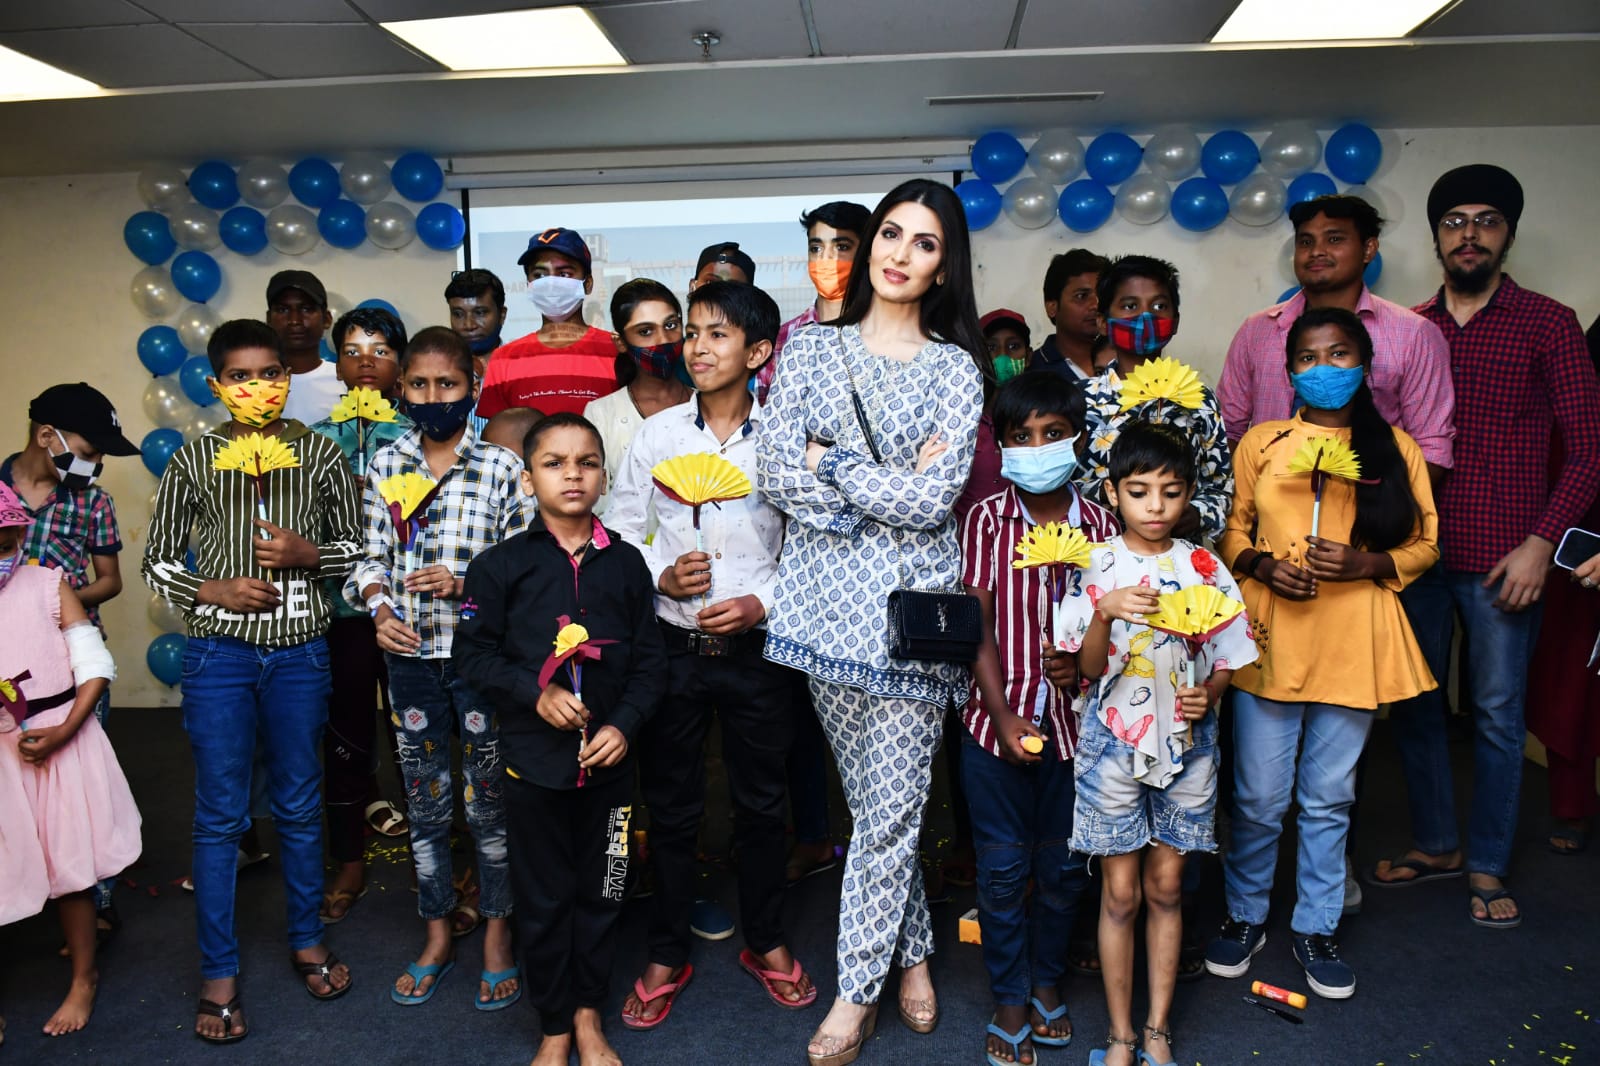 ऋद्धिमा कपूर साहनी की मौजूदगी में स्‍टार्ट इंडिया फाउंडेशन और एशियन पेंट्स ने नोएडा के पोस्‍ट ग्रेजुएट इंस्टिट्यूट ऑफ चाइल्‍ड हेल्‍थ में बच्‍चों के लिए किया आर्ट वर्कशॉप का आयोजन